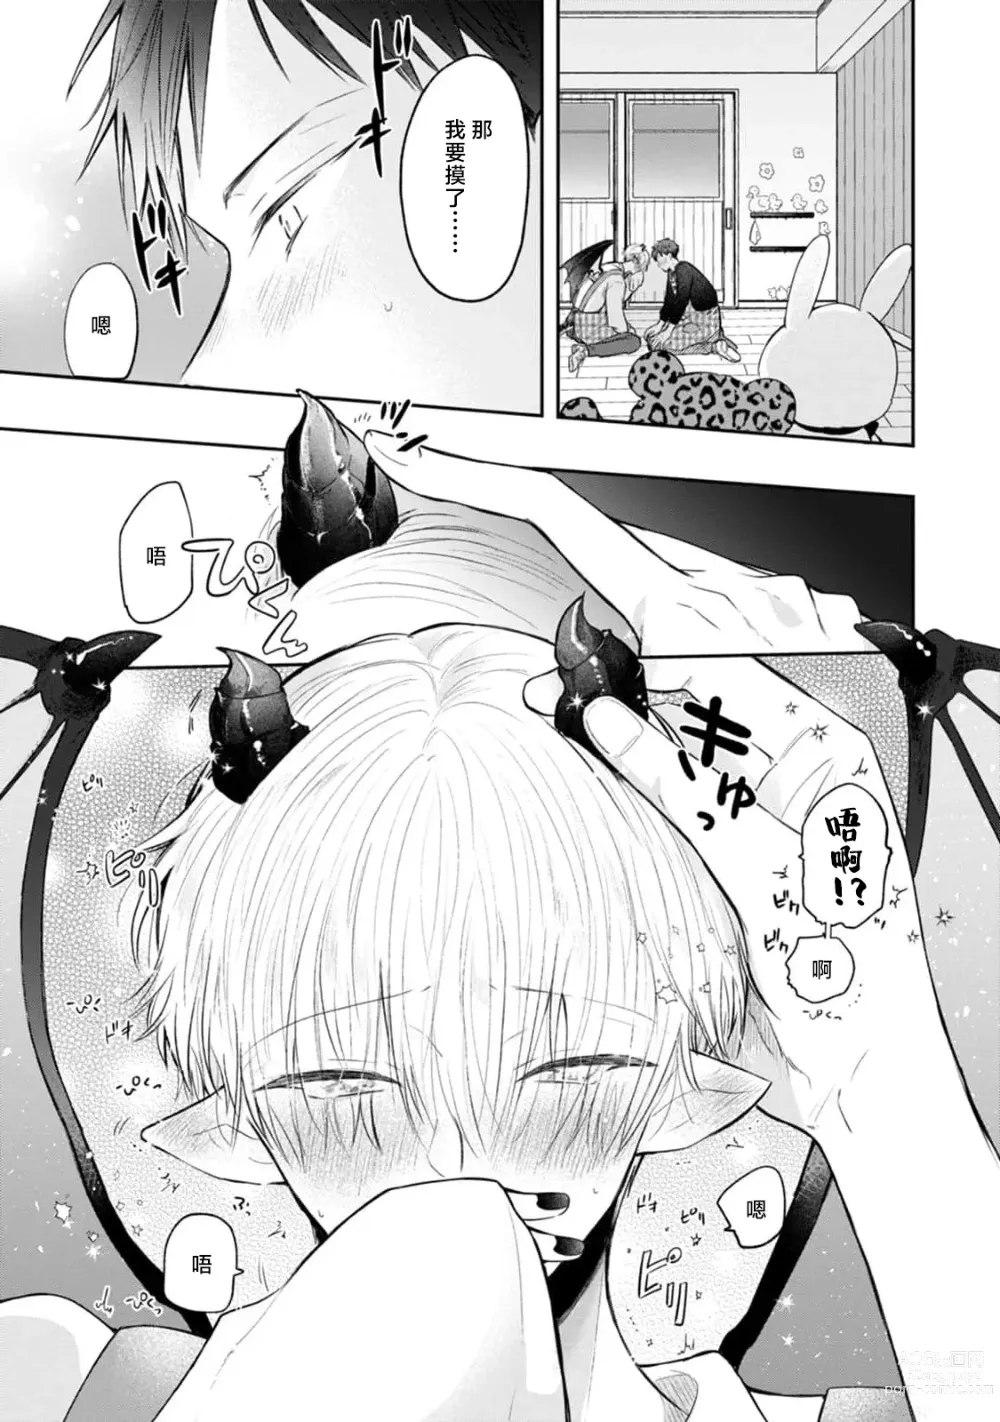 Page 3 of manga 叶羽老师全部是第一次 1-4